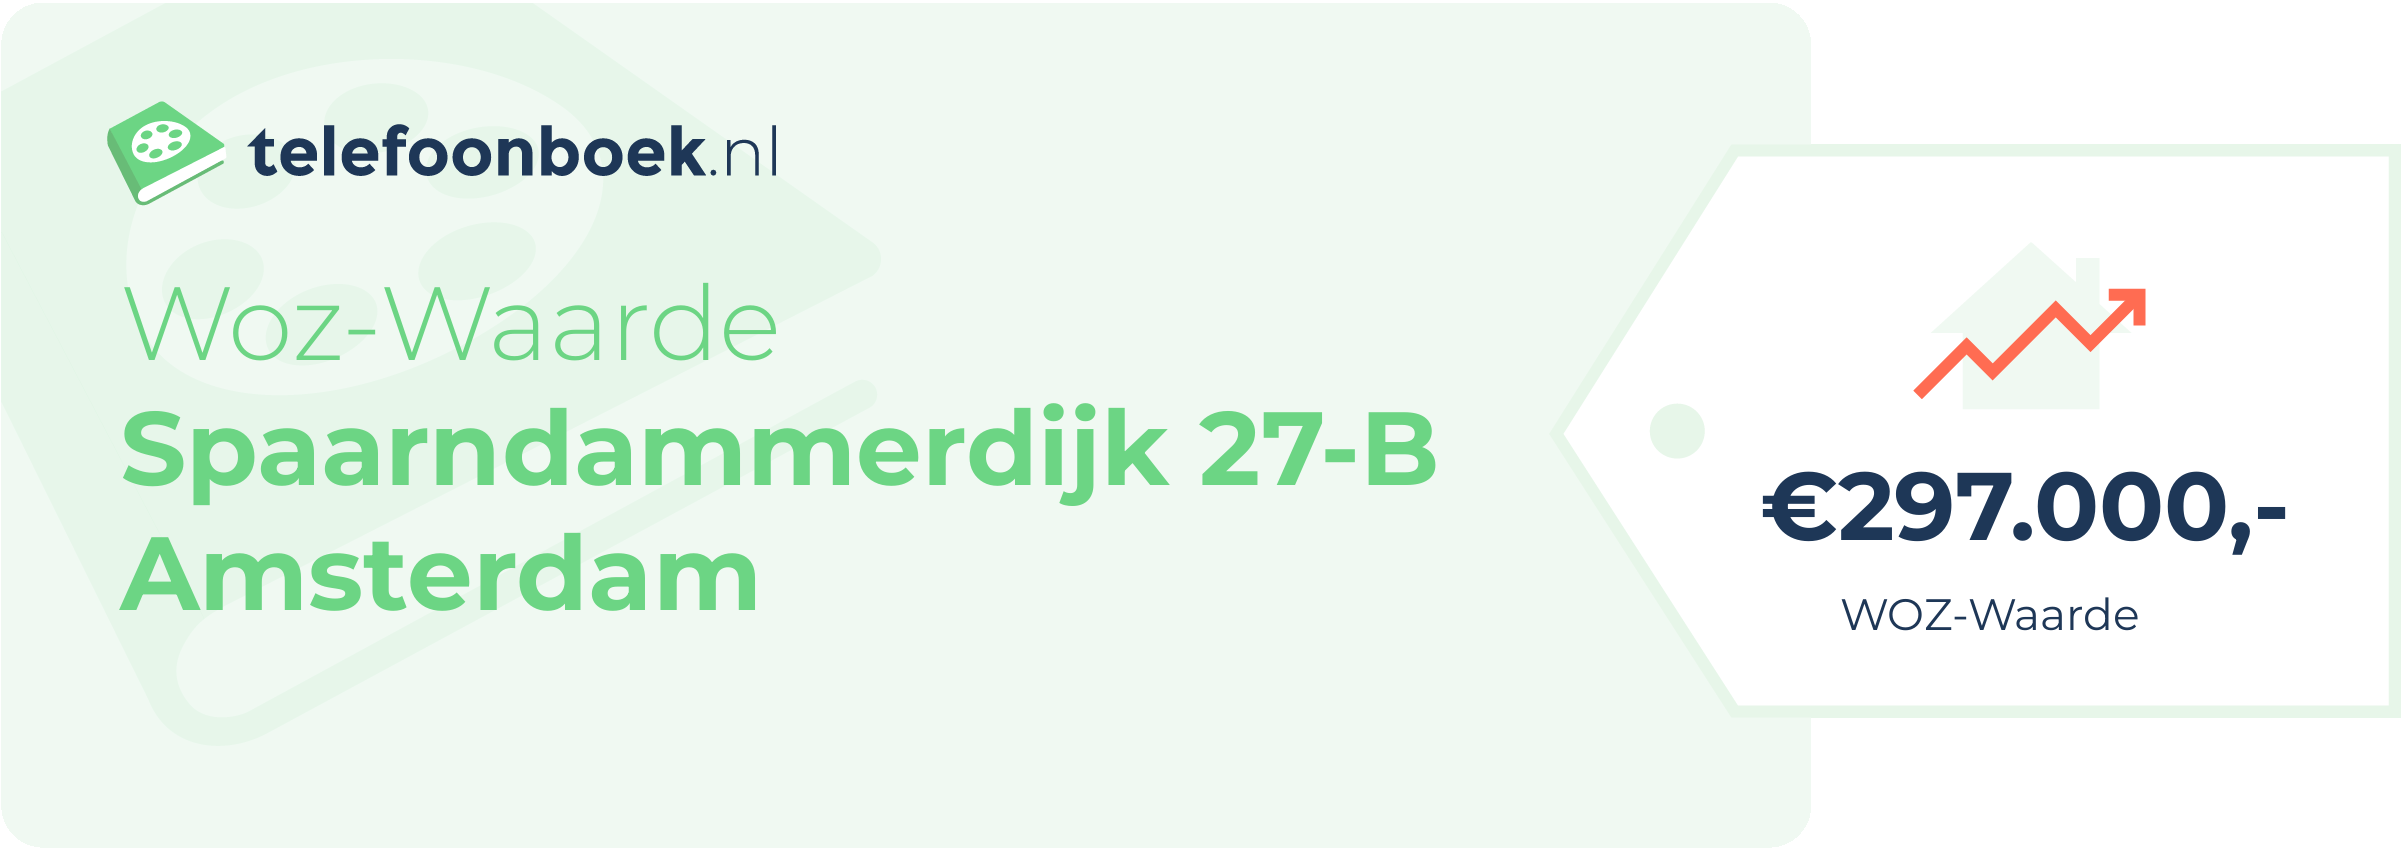 WOZ-waarde Spaarndammerdijk 27-B Amsterdam